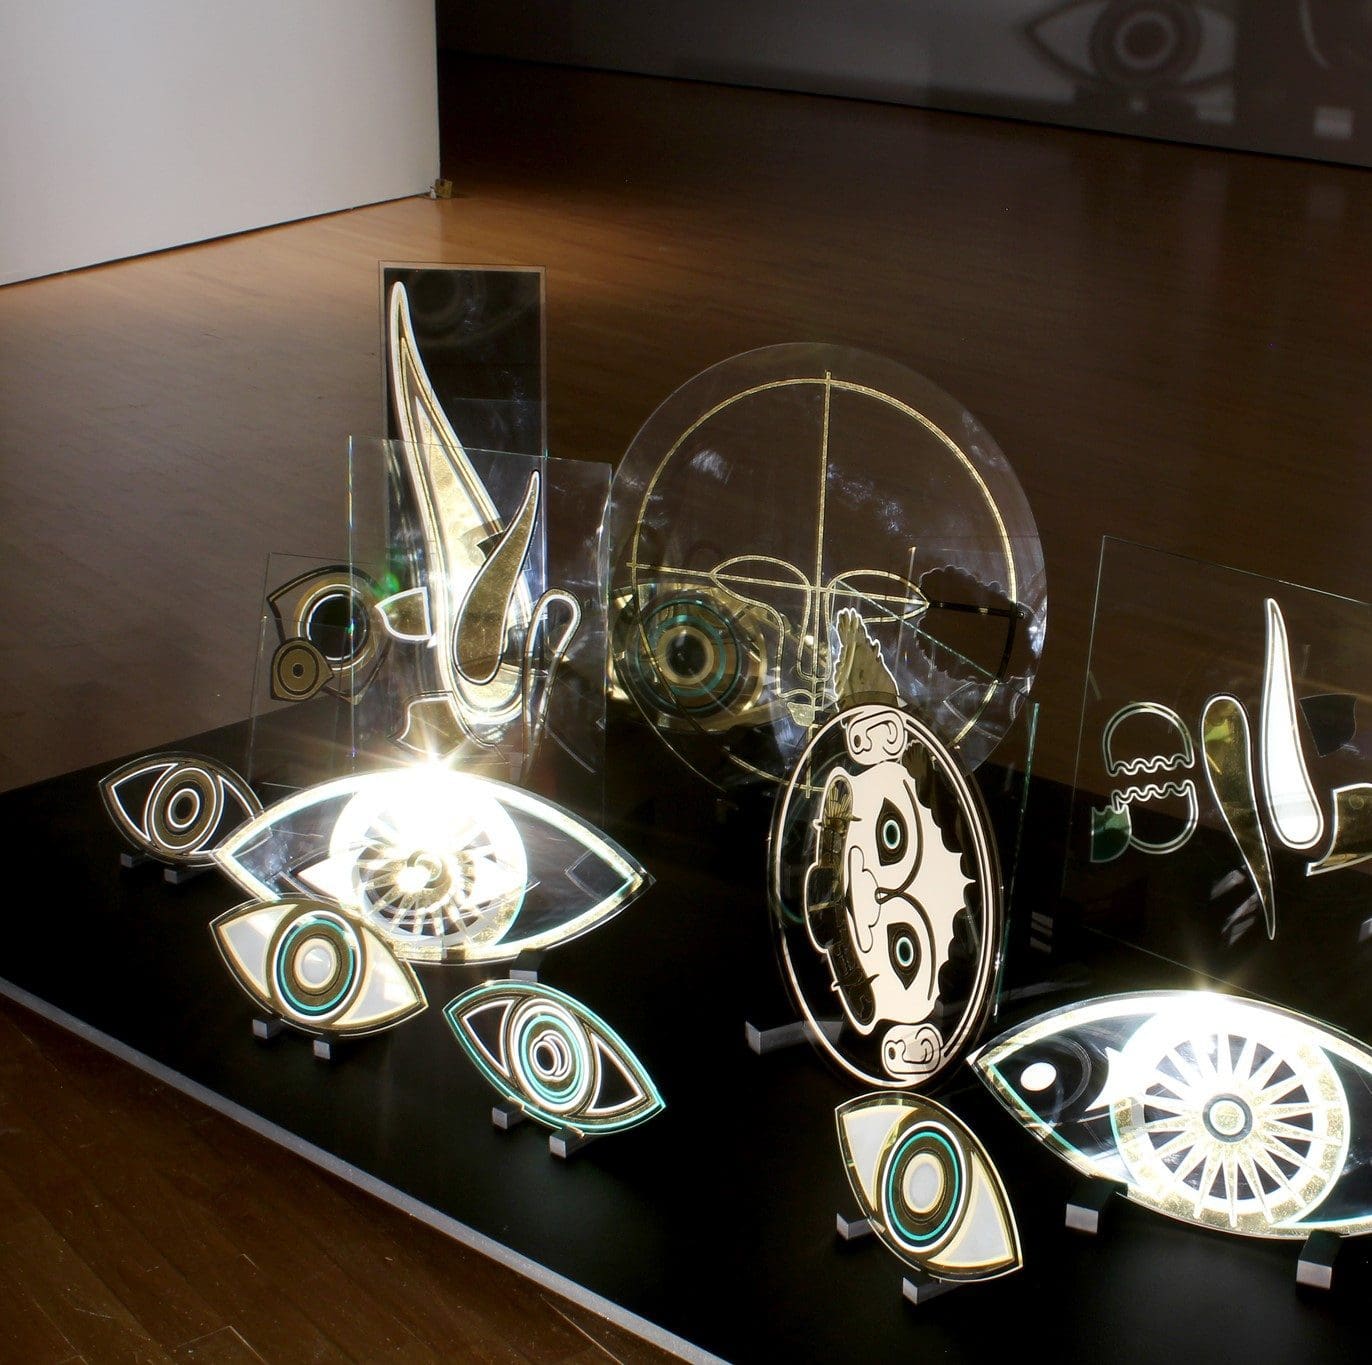 Glass sculptures reflect the light